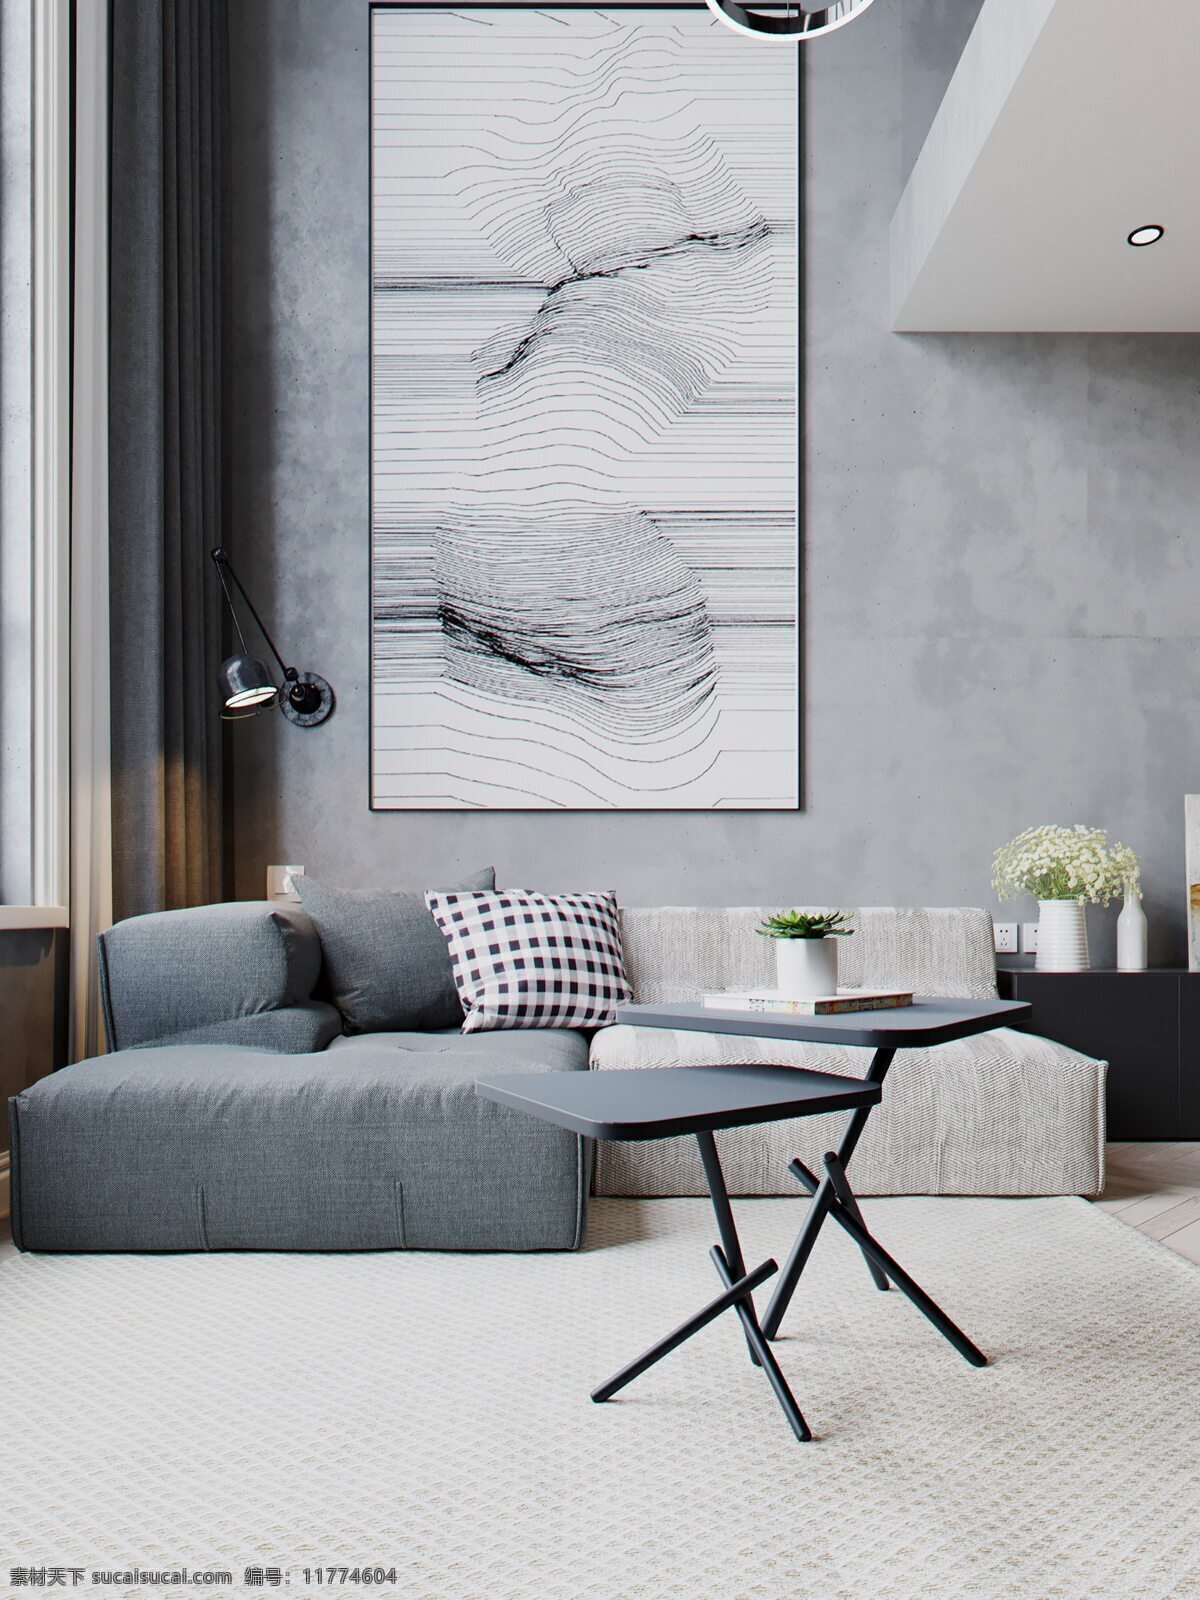 公寓 客厅 墙纸 墙布 效果图 室内设计 搭配 现代 北欧 bbbb